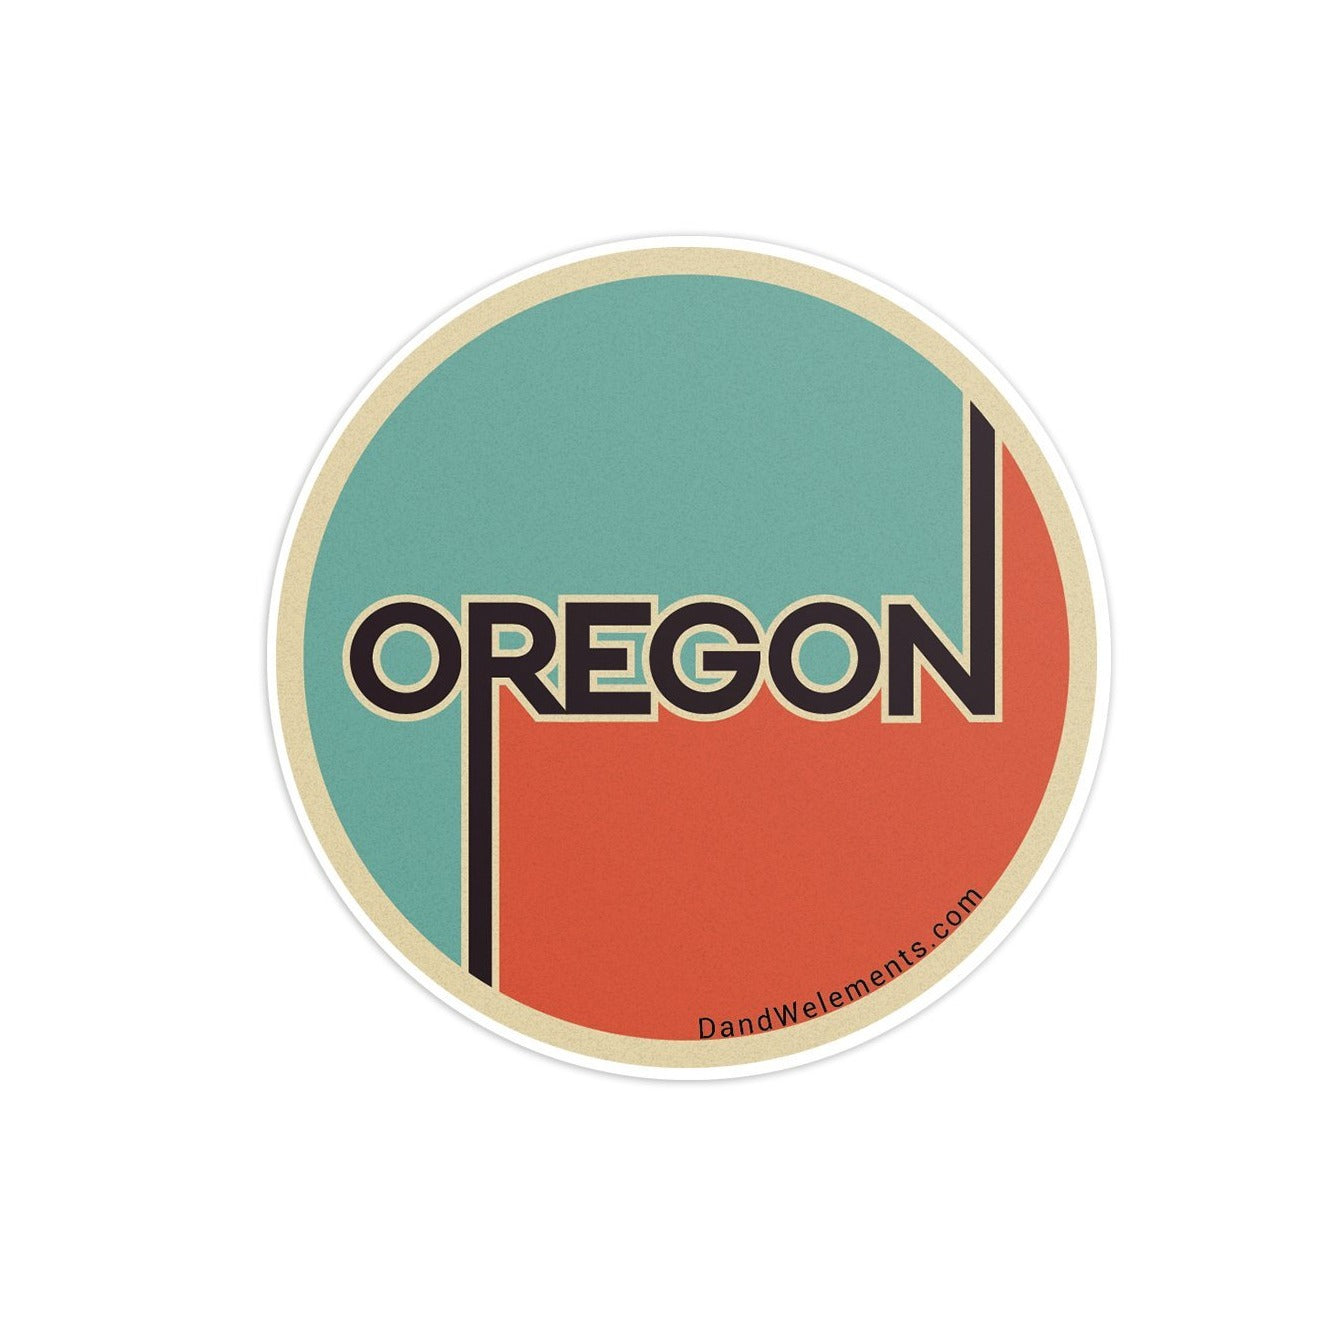 Retro Vintage Oregon Sticker - D&W Elements